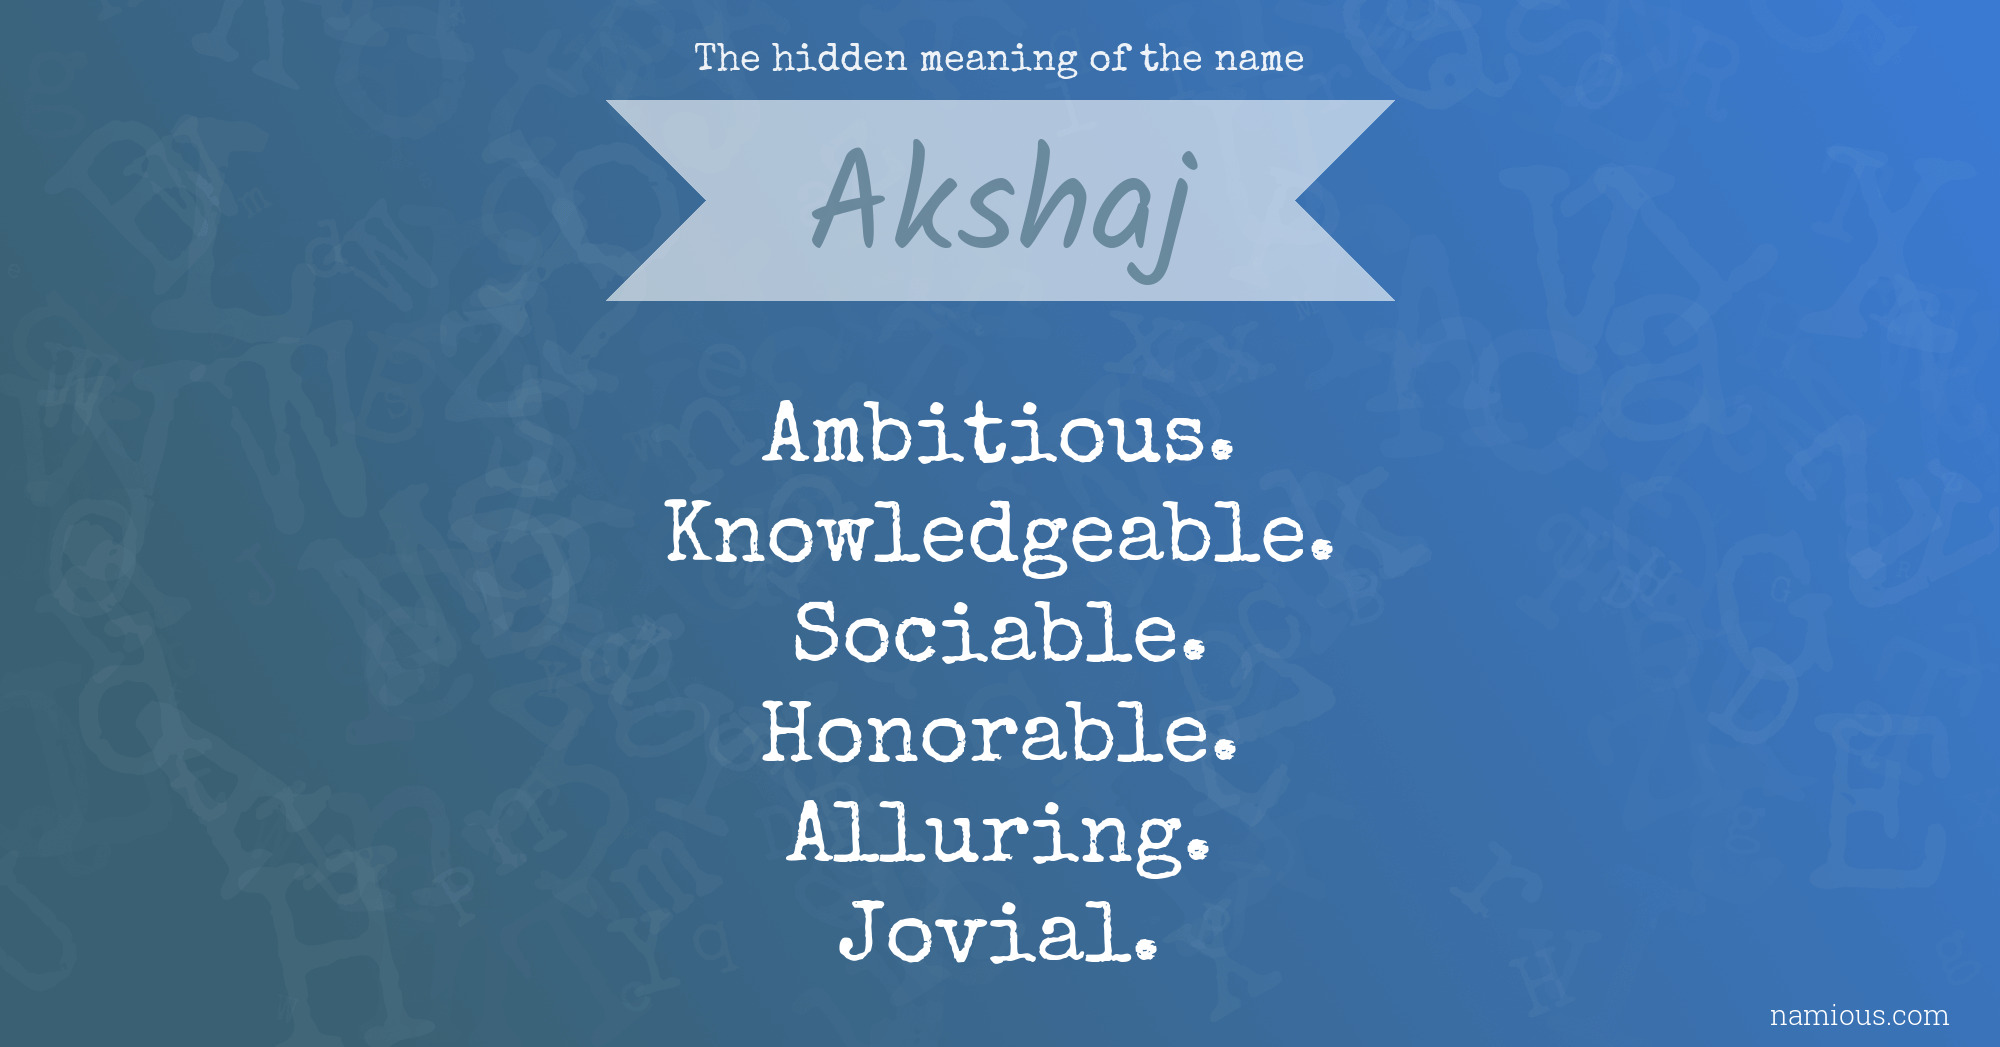 The hidden meaning of the name Akshaj